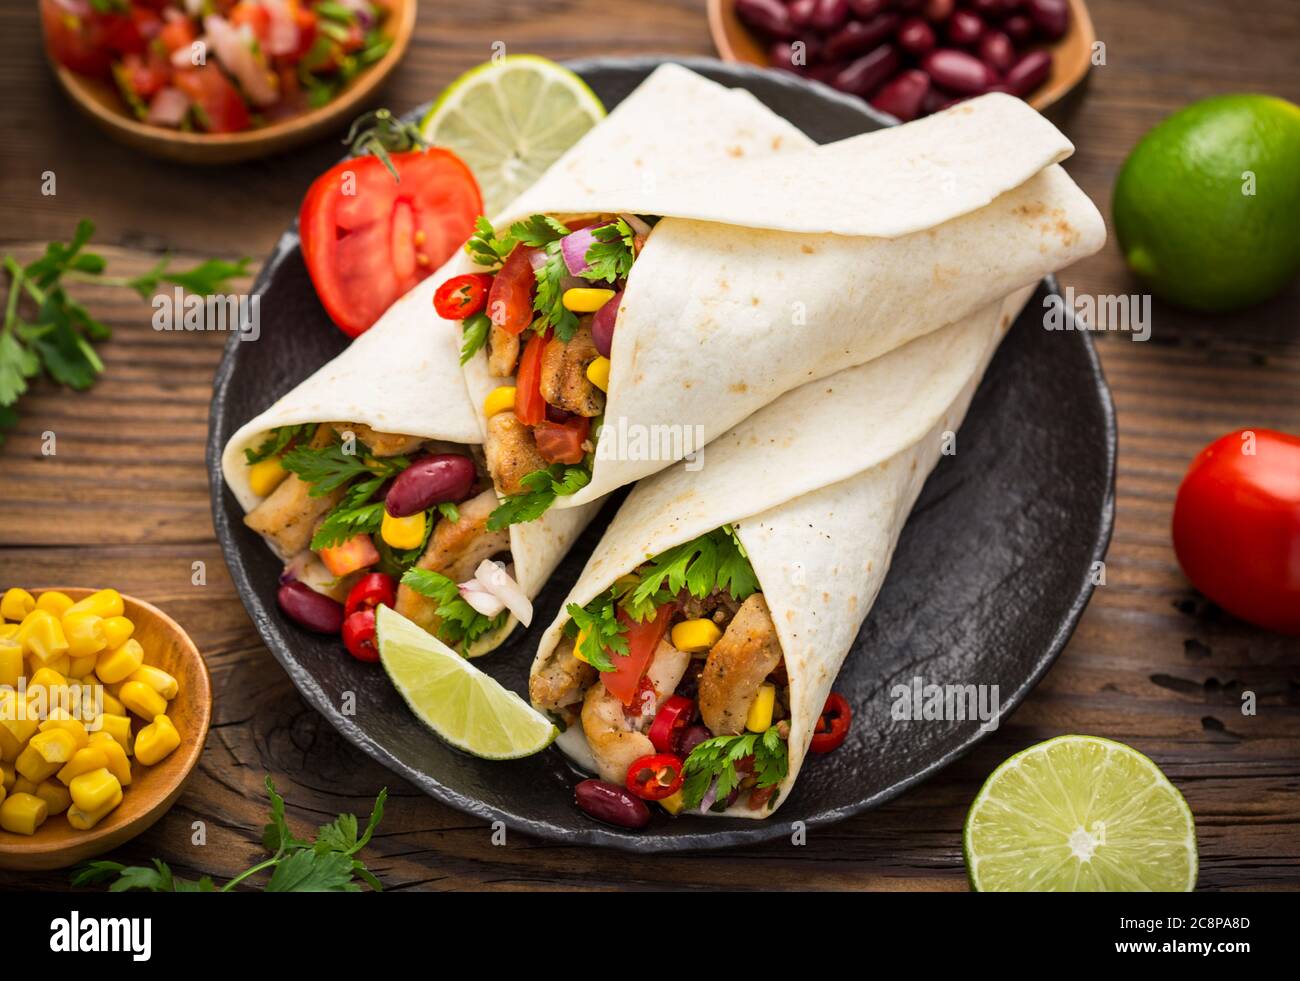 Frische Tortilla Wraps mit Hühnerfleisch und Gemüse auf dem Holztisch Stockfoto